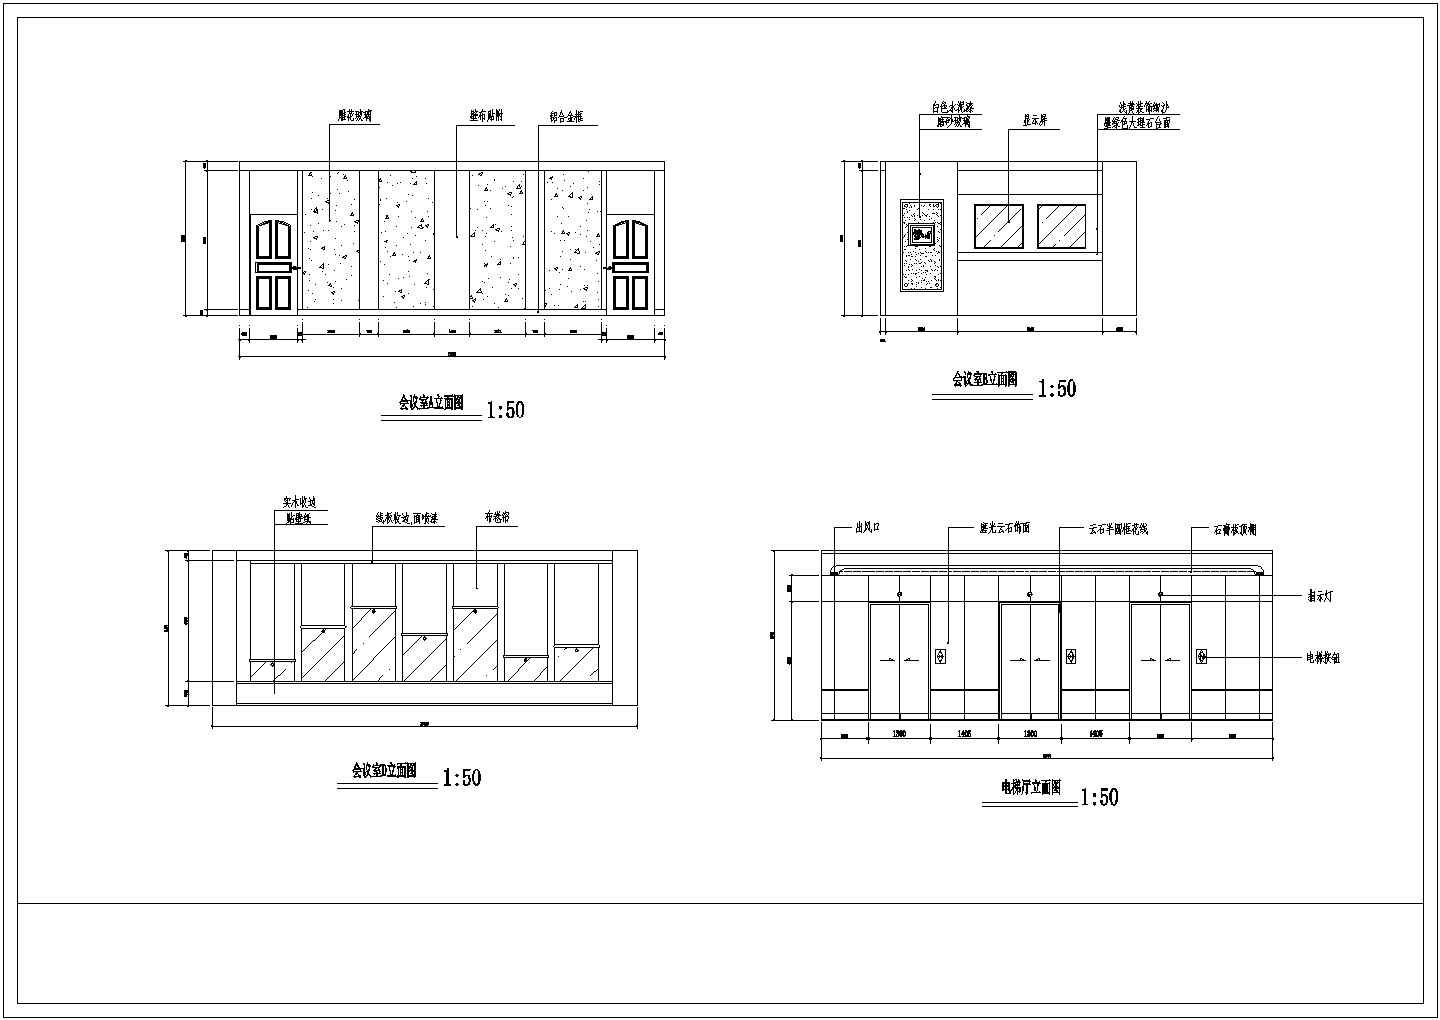 北京某公共办公空间全套装修施工设计cad图纸(含顶棚平面图)